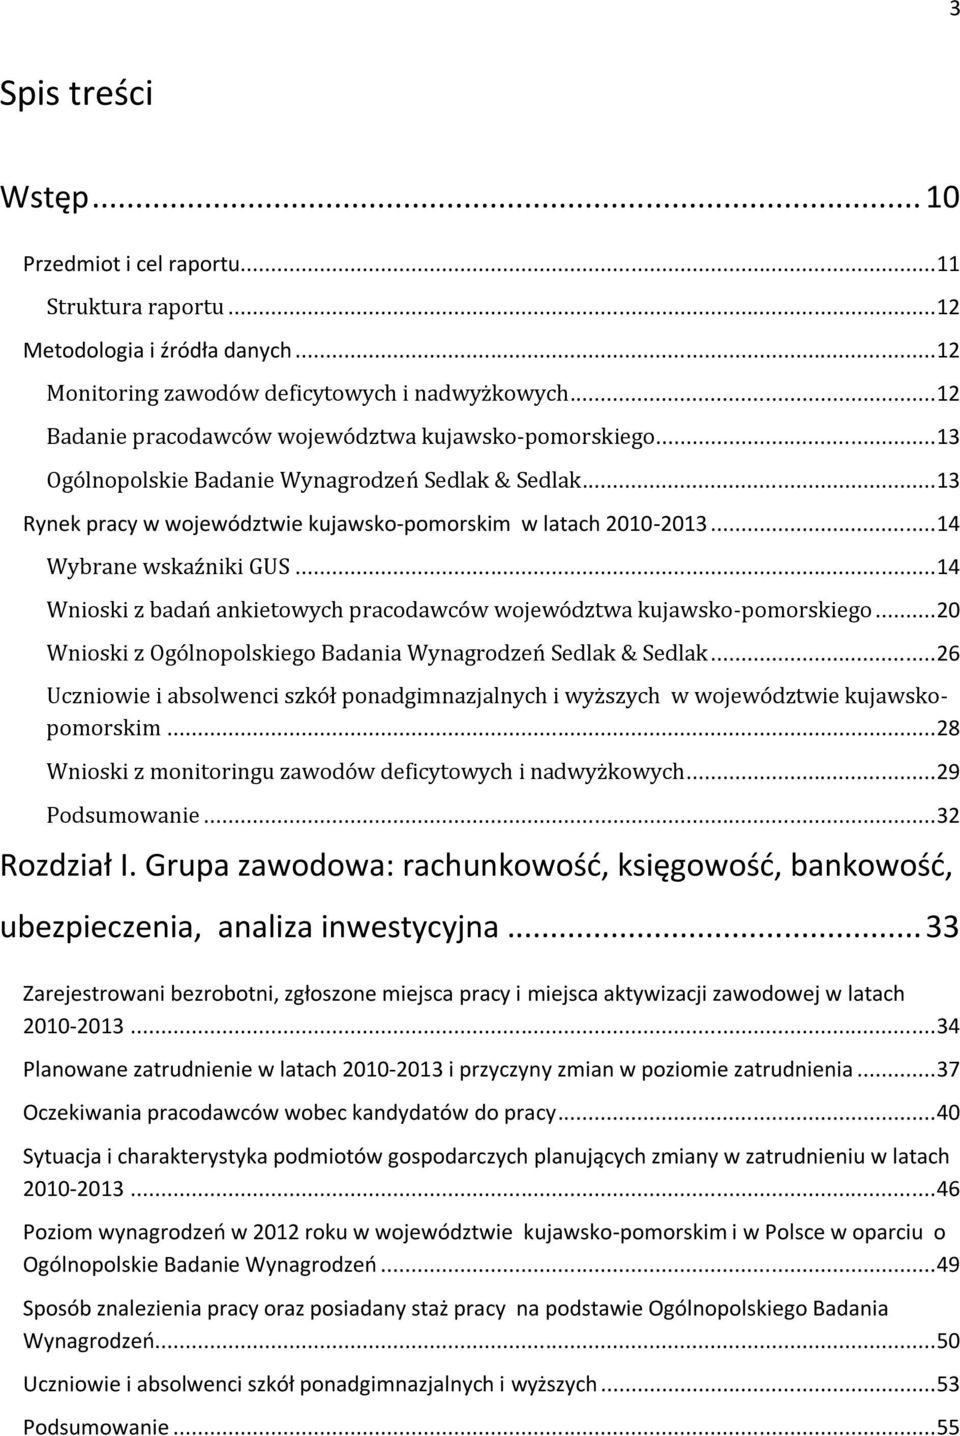 .. 14 Wybrane wskaźniki GUS... 14 Wnioski z badań ankietowych pracodawców województwa kujawsko-pomorskiego... 20 Wnioski z Ogólnopolskiego Badania Wynagrodzeń Sedlak & Sedlak.